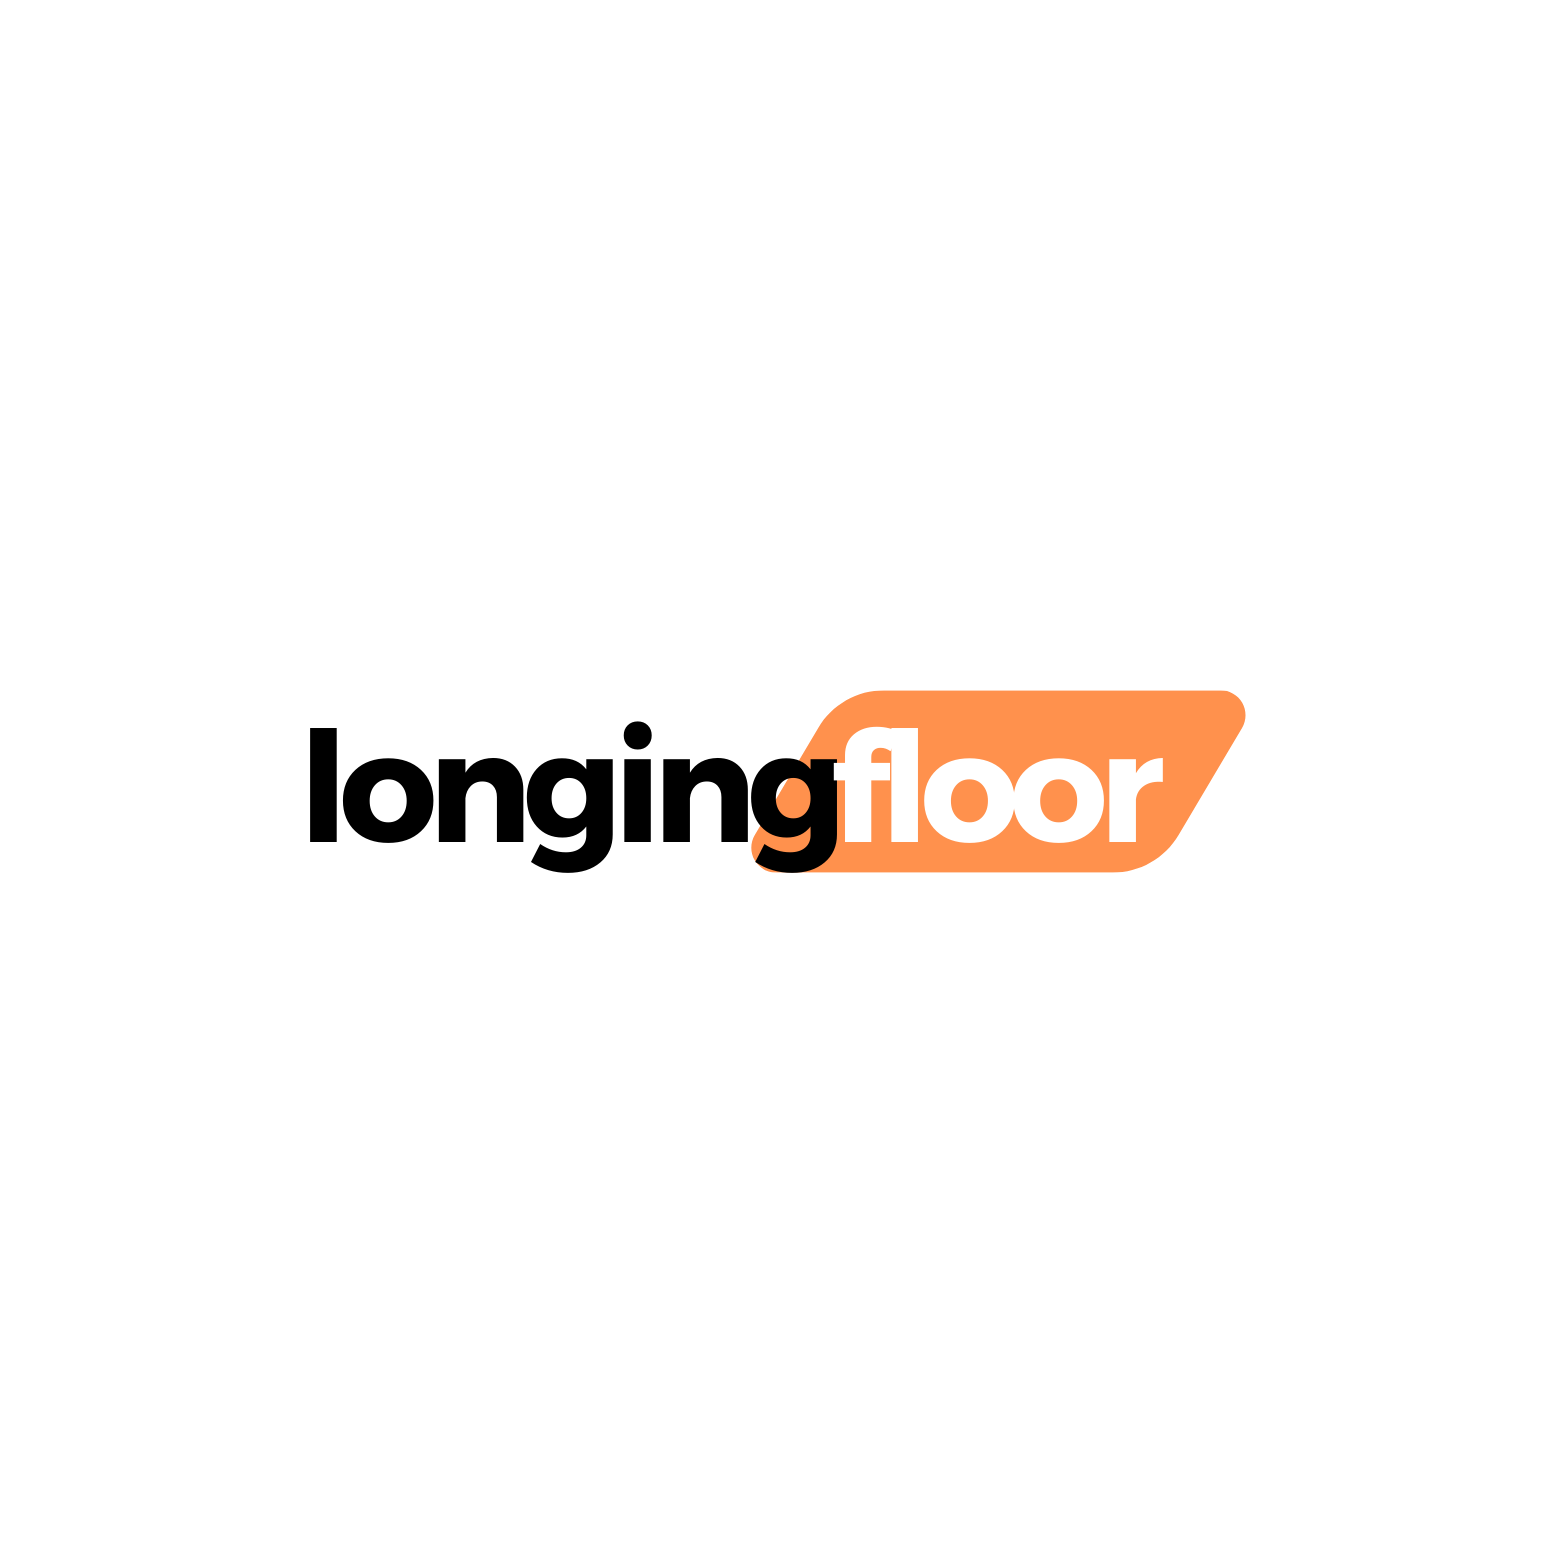 Longing Floor